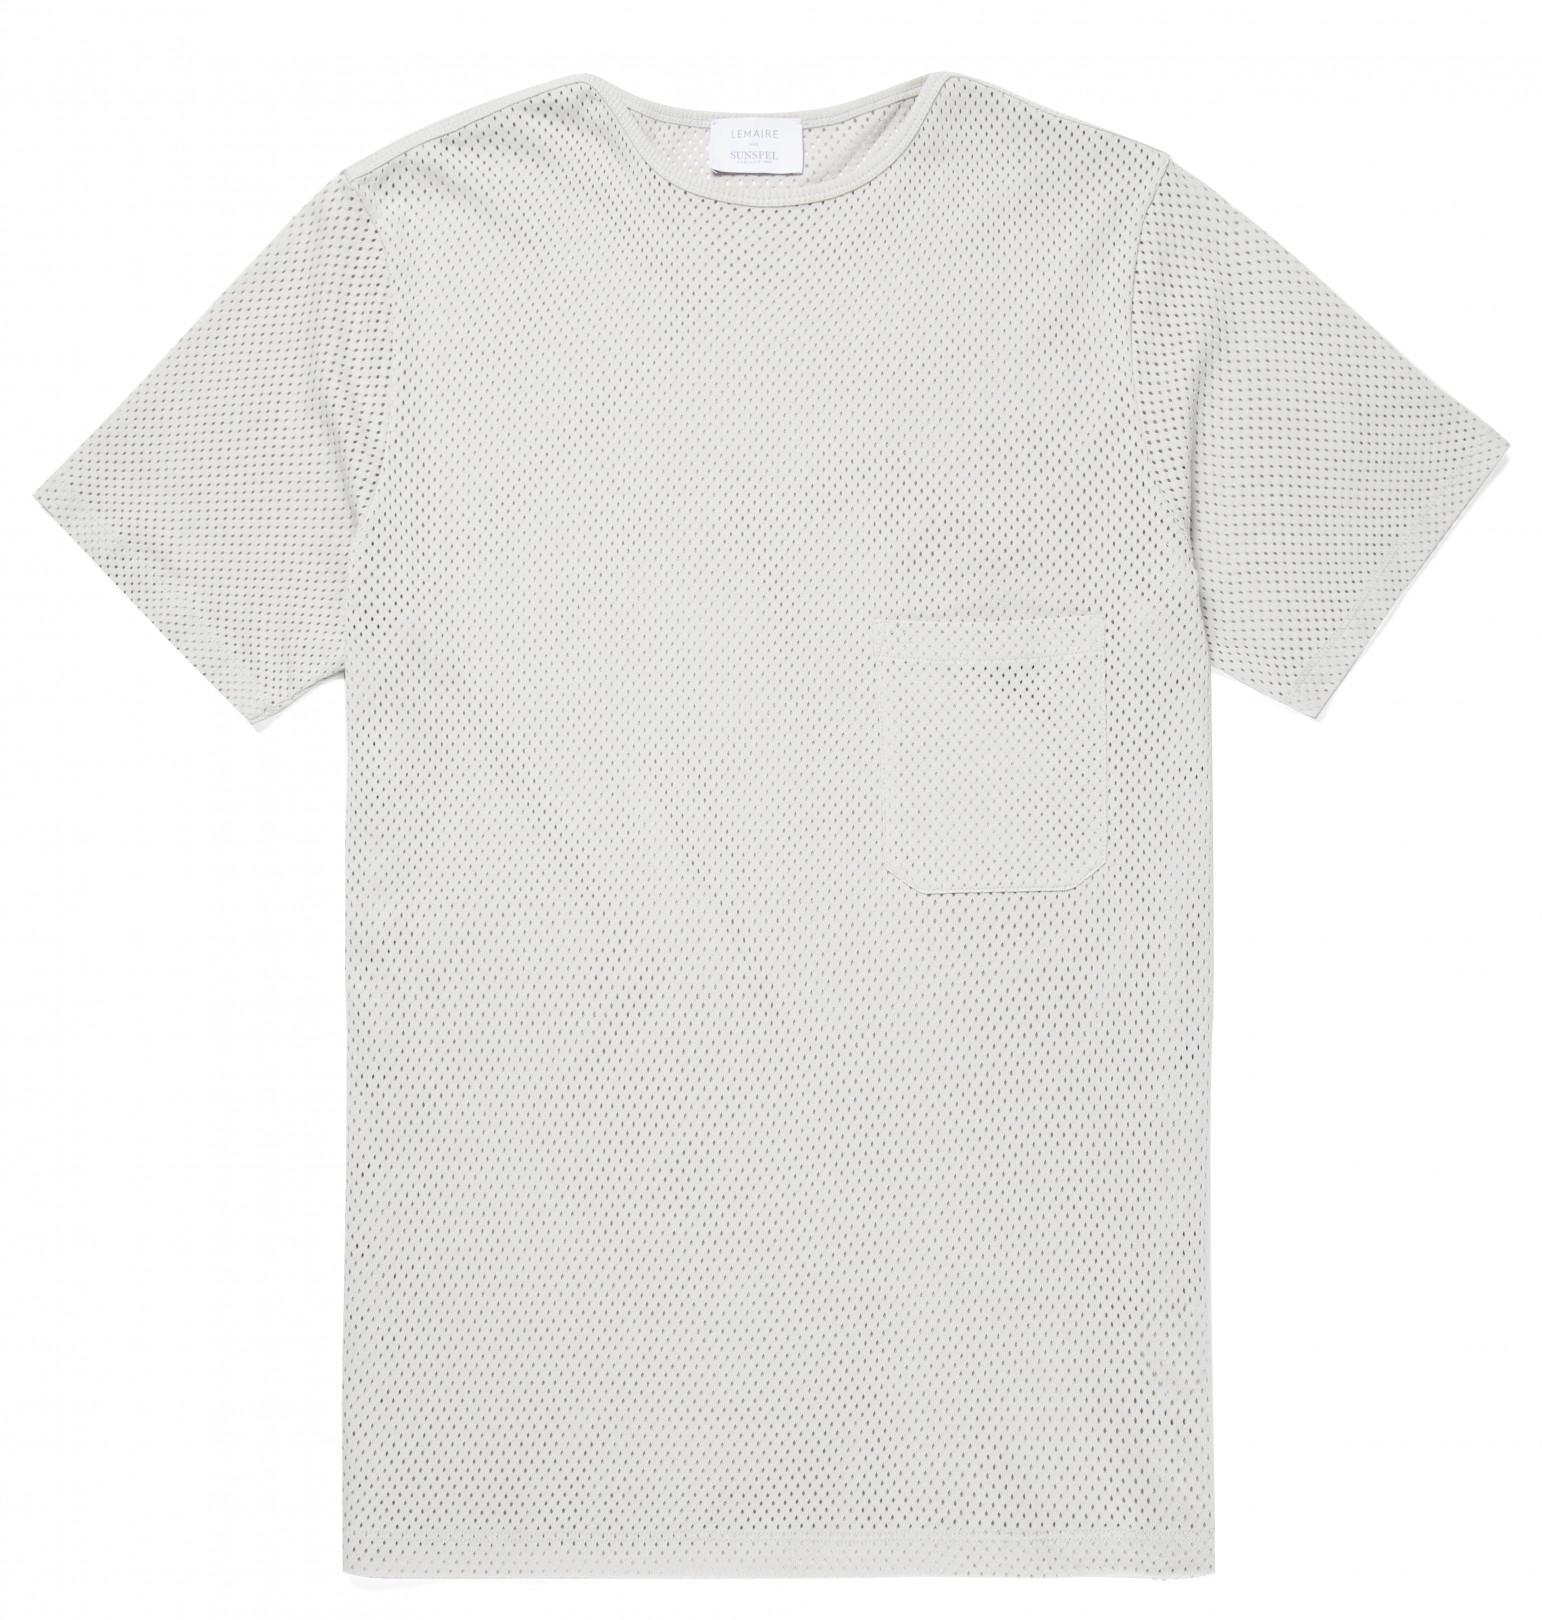 メッシュTシャツ 半袖 2万1,000円（サイズ：XS・S・M / カラー：ライトグレー、シナモン、ミッドナイトブルー）